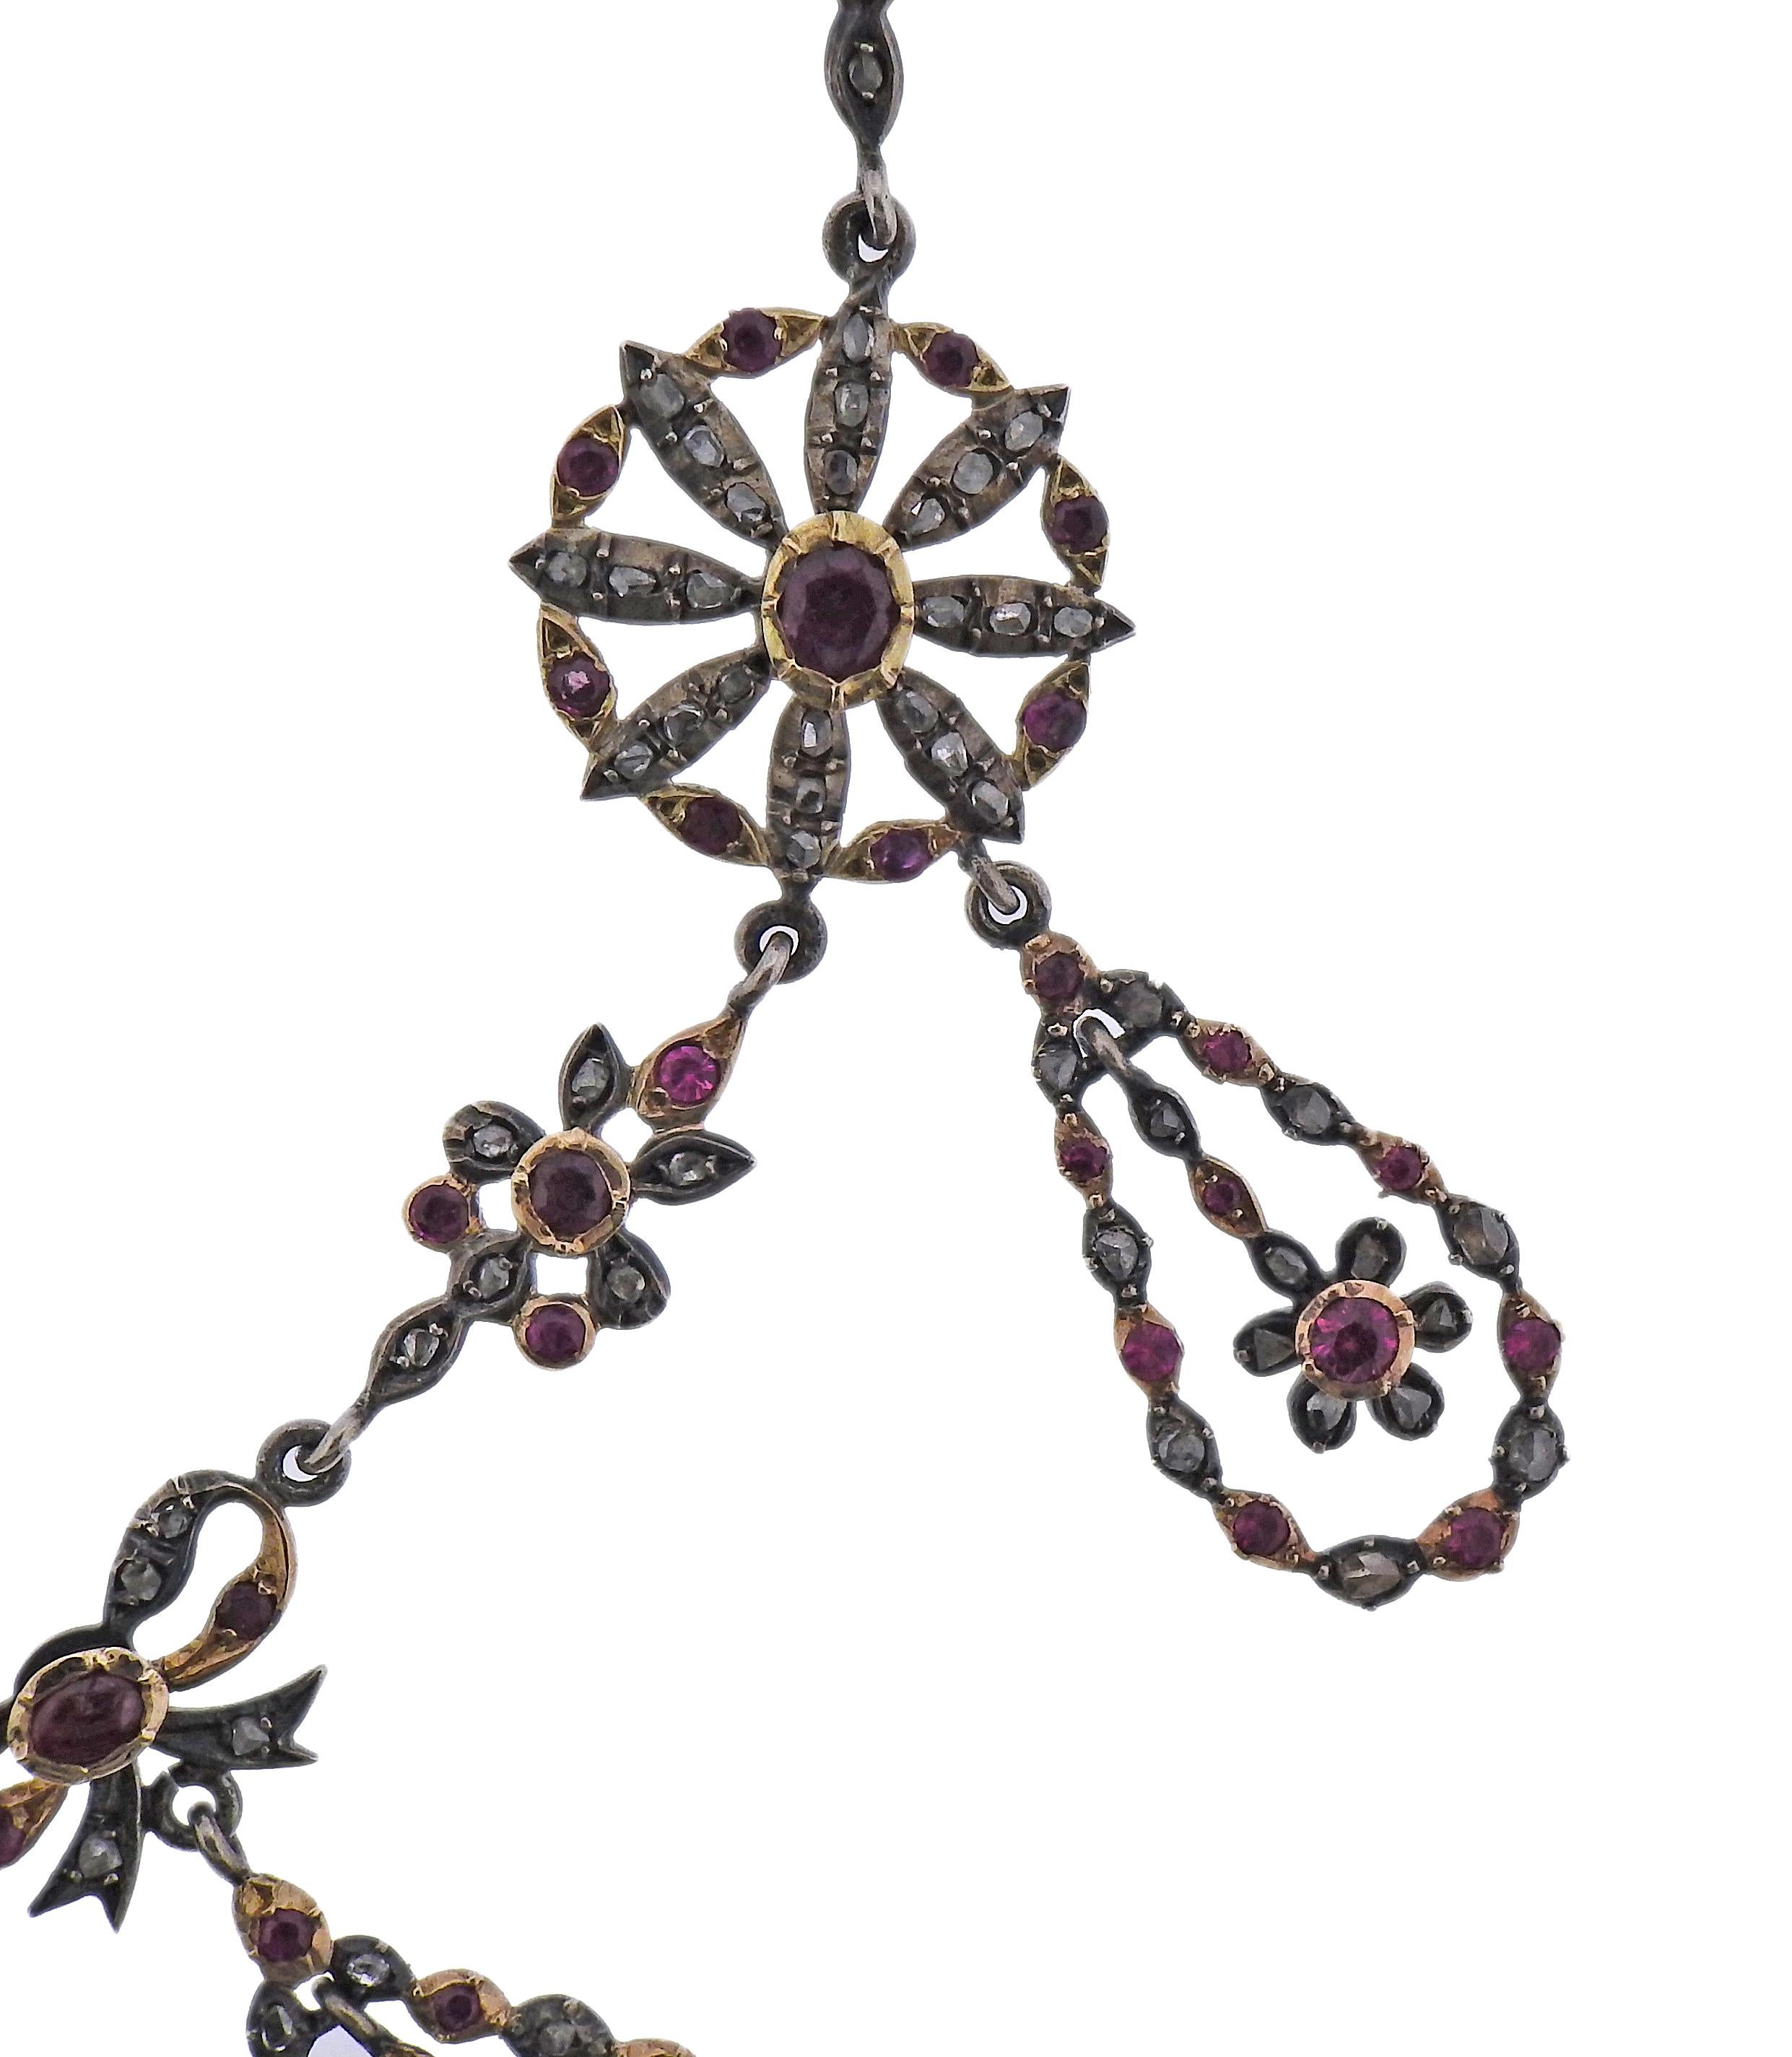 Antike edwardianische Halskette aus Silber und 14 Karat Gold, besetzt mit Rubinen und Diamanten im Rosenschliff.  Die Halskette wird in einer Schachtel geliefert. Maßnahmen 19,5 